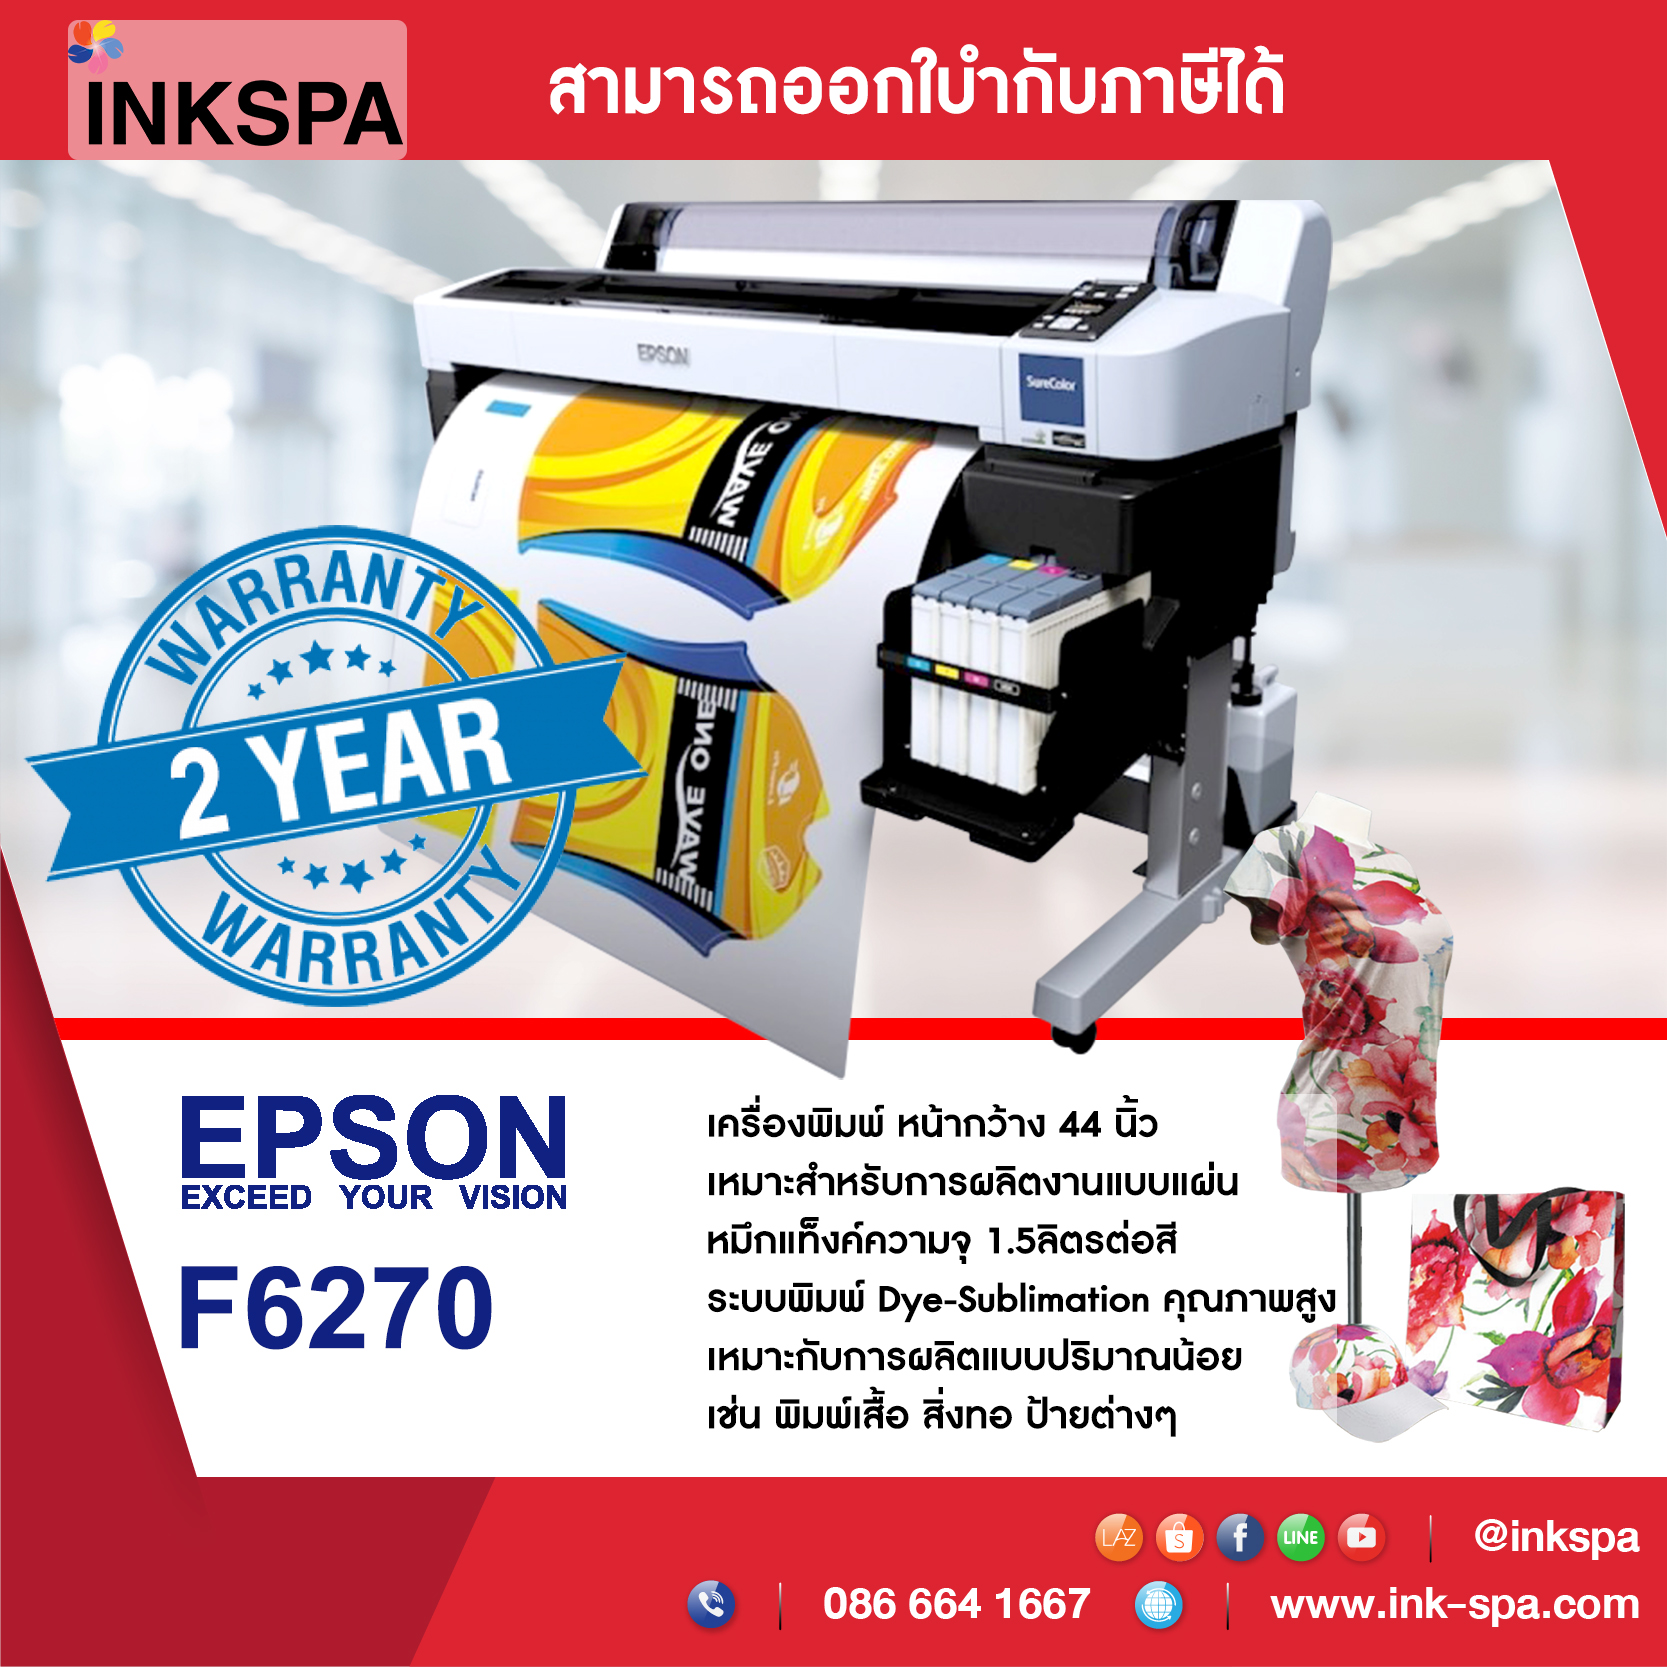 เครื่องพิมพ์ผ้า EPSON F6270 พร้อมหมึก 4 ลิตร (แถมหมึก 24 ลิตร) เครื่องพิมพ์ซับลิเมชั่น เครื่องพิมพ์ผ้าม้วน Dye-Sublimation หัวพิมพ์ระบบ Precision Core TFP